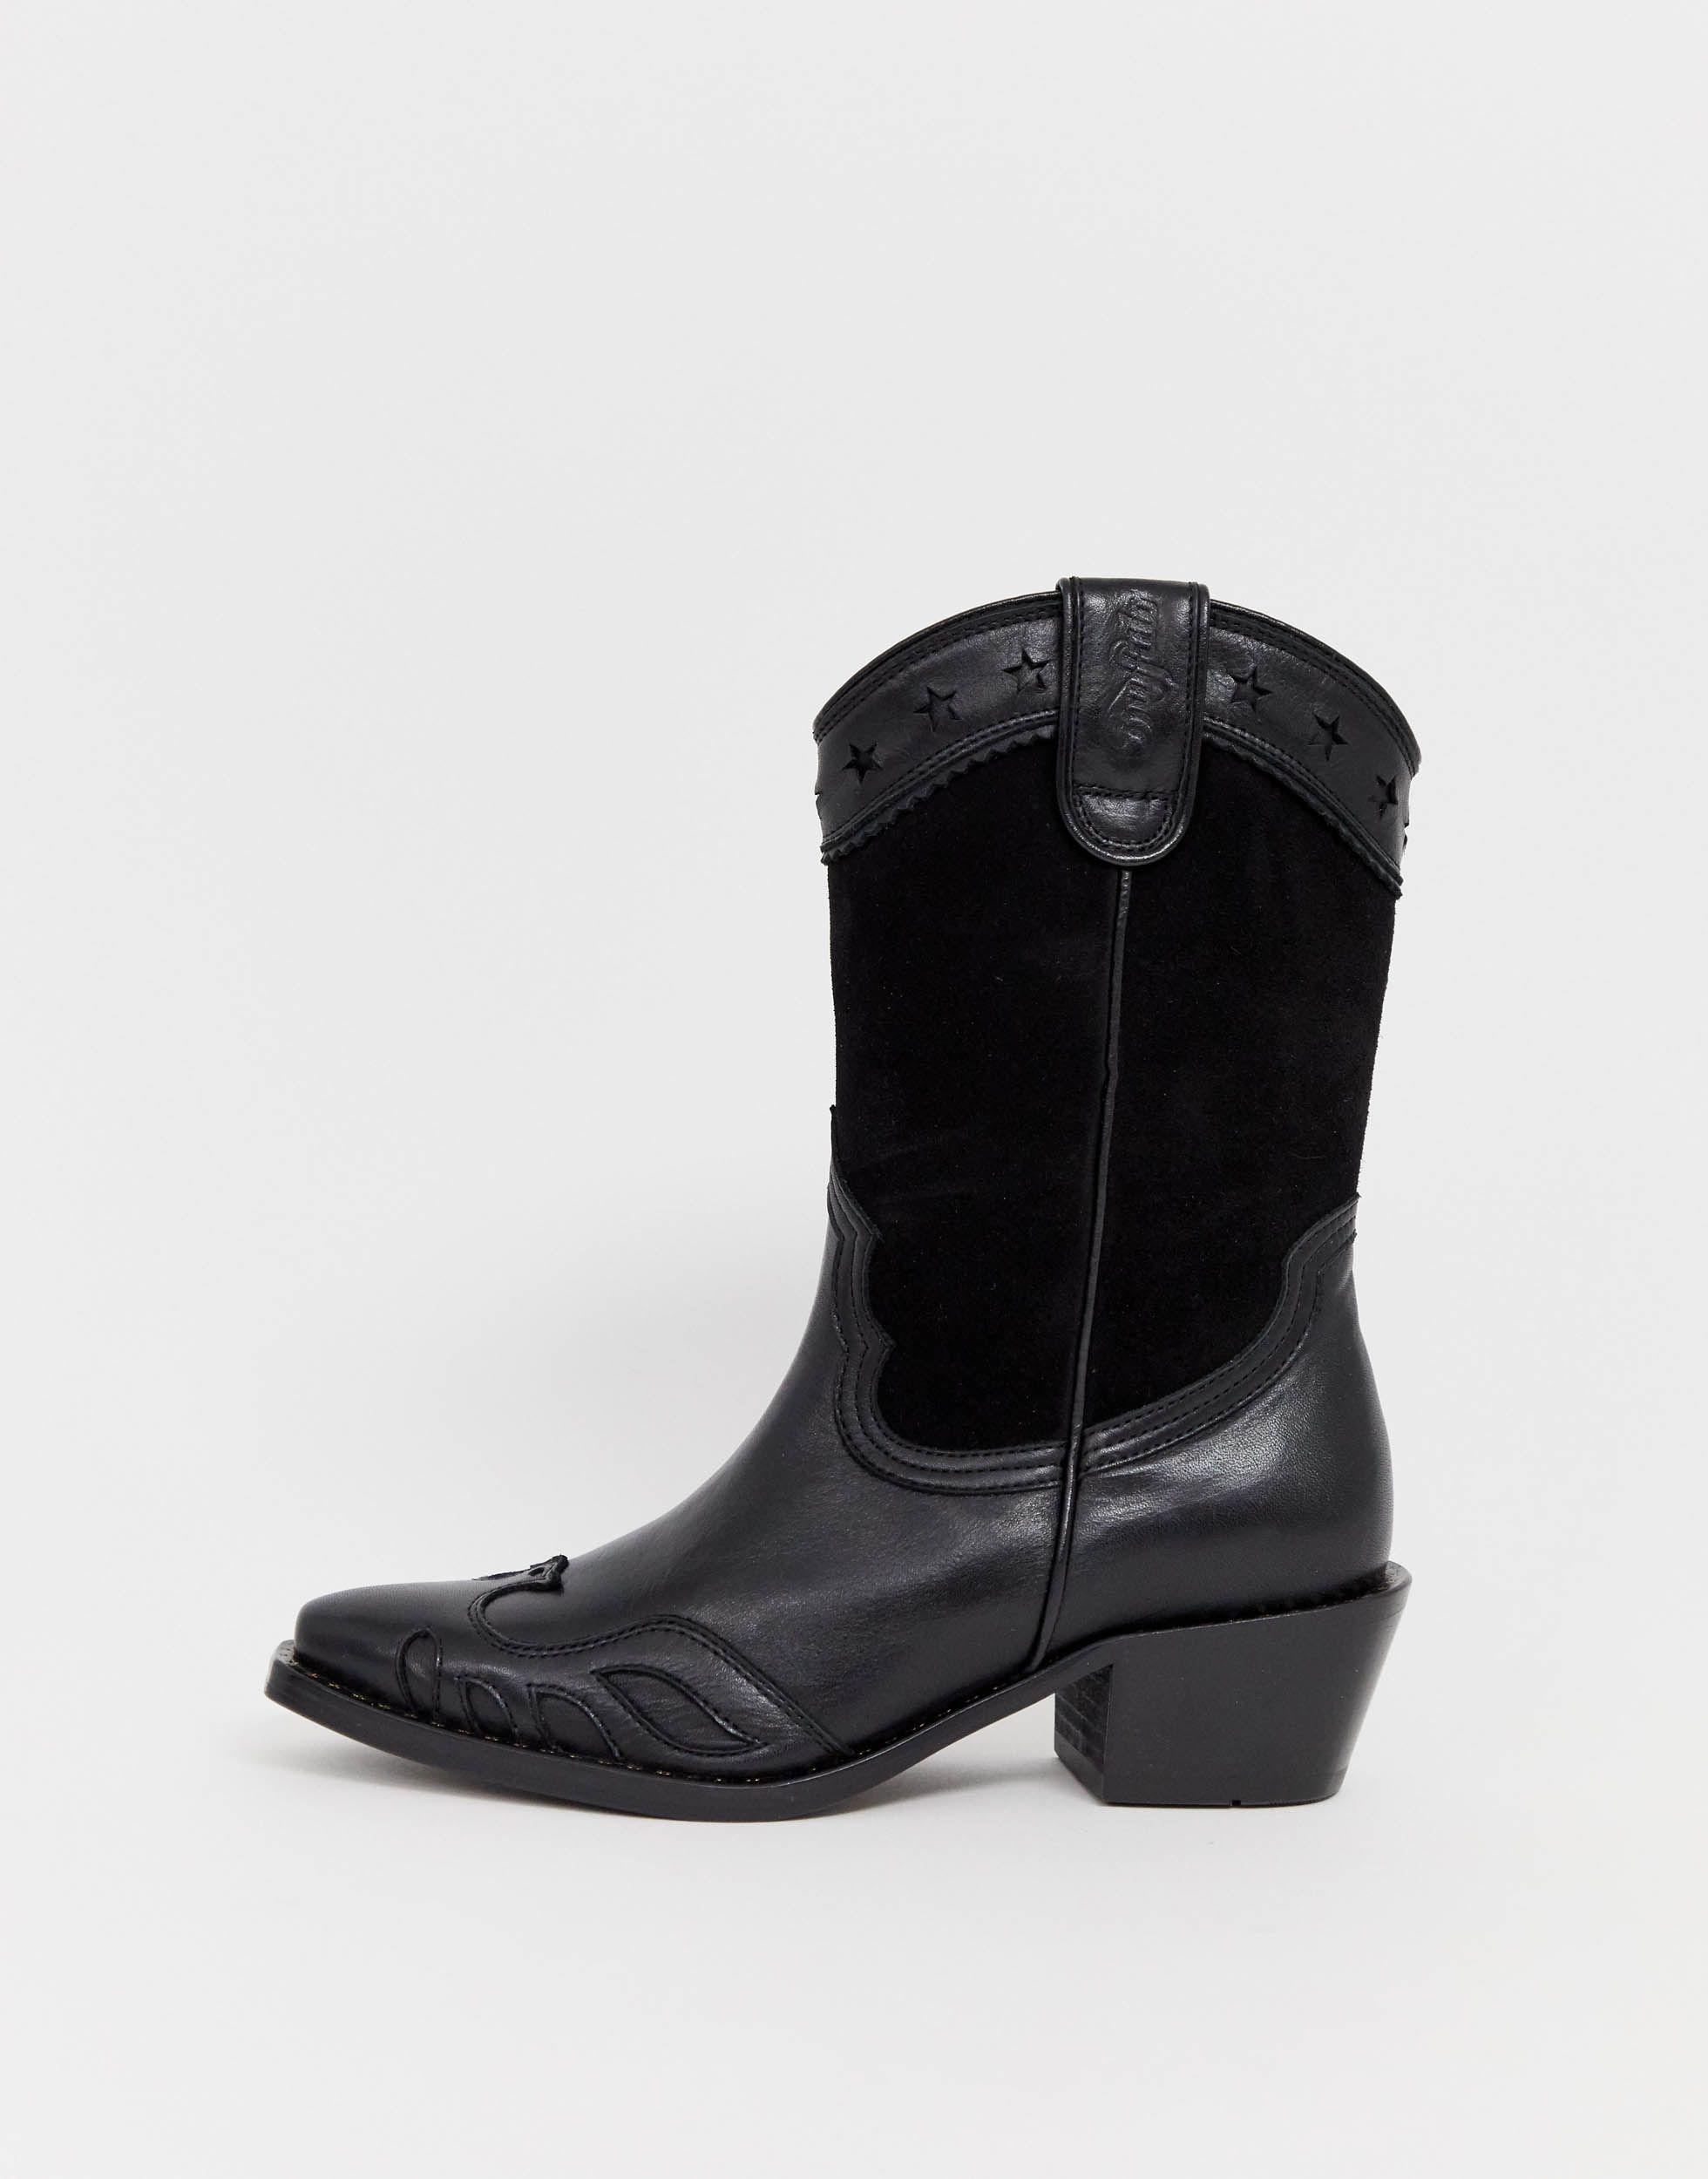 Buffalo Leather London Gerda Western Cowboy Boots in Black | Lyst